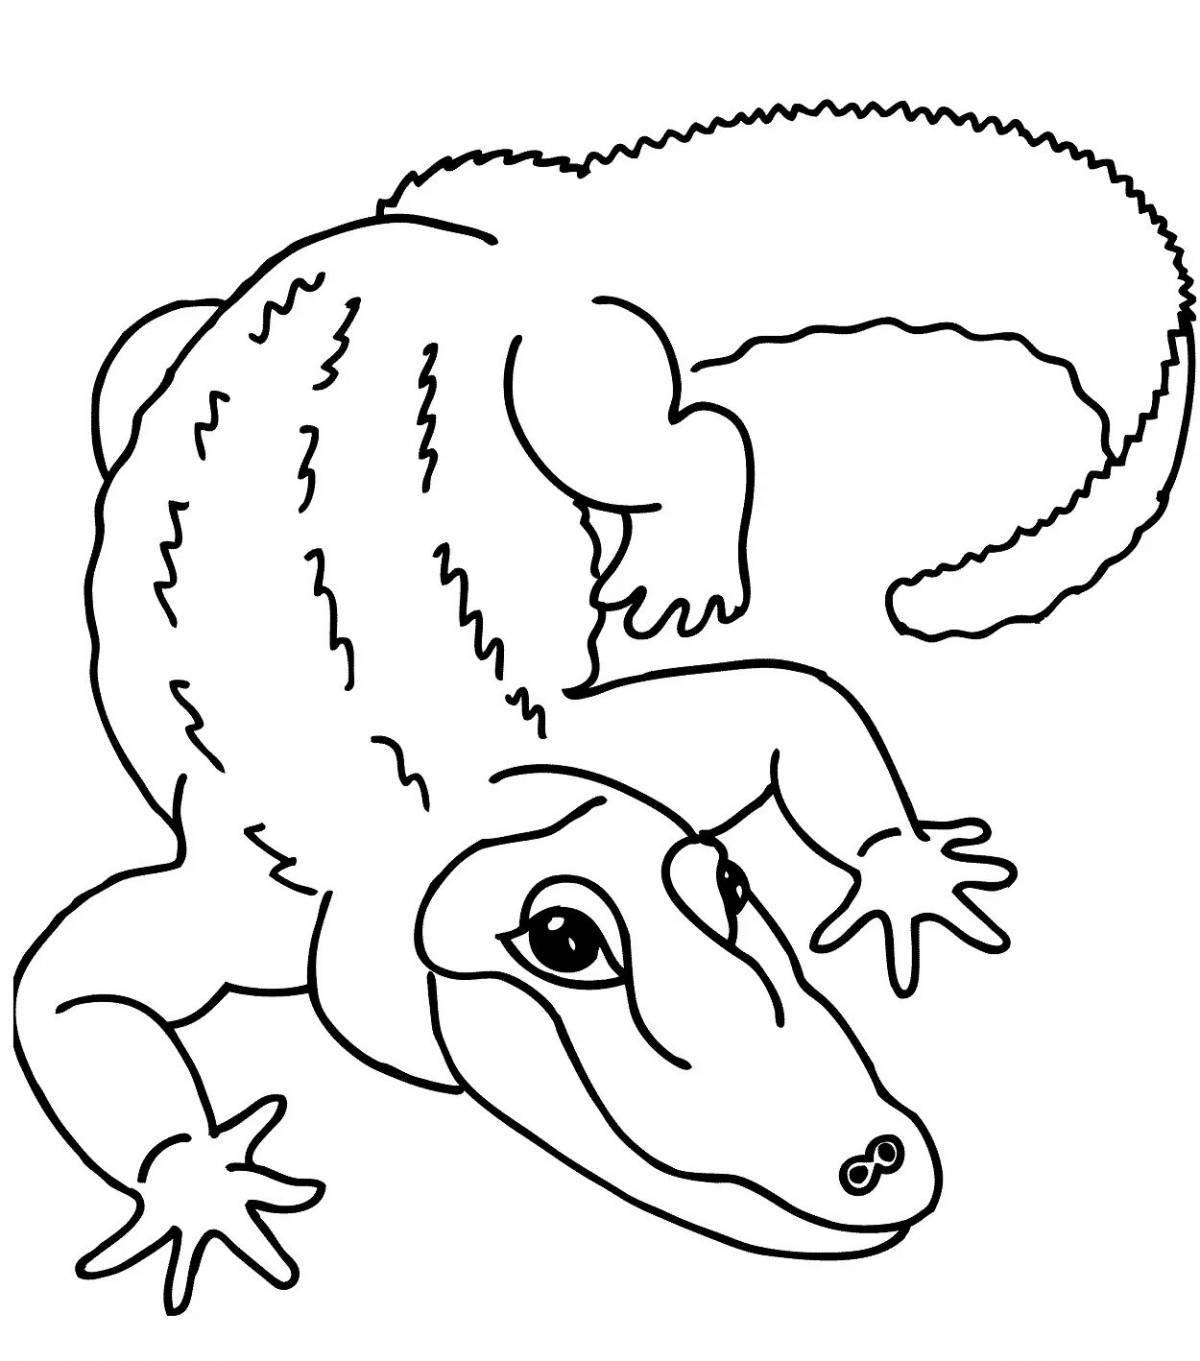 Юмористическая раскраска крокодил для детей 3-4 лет